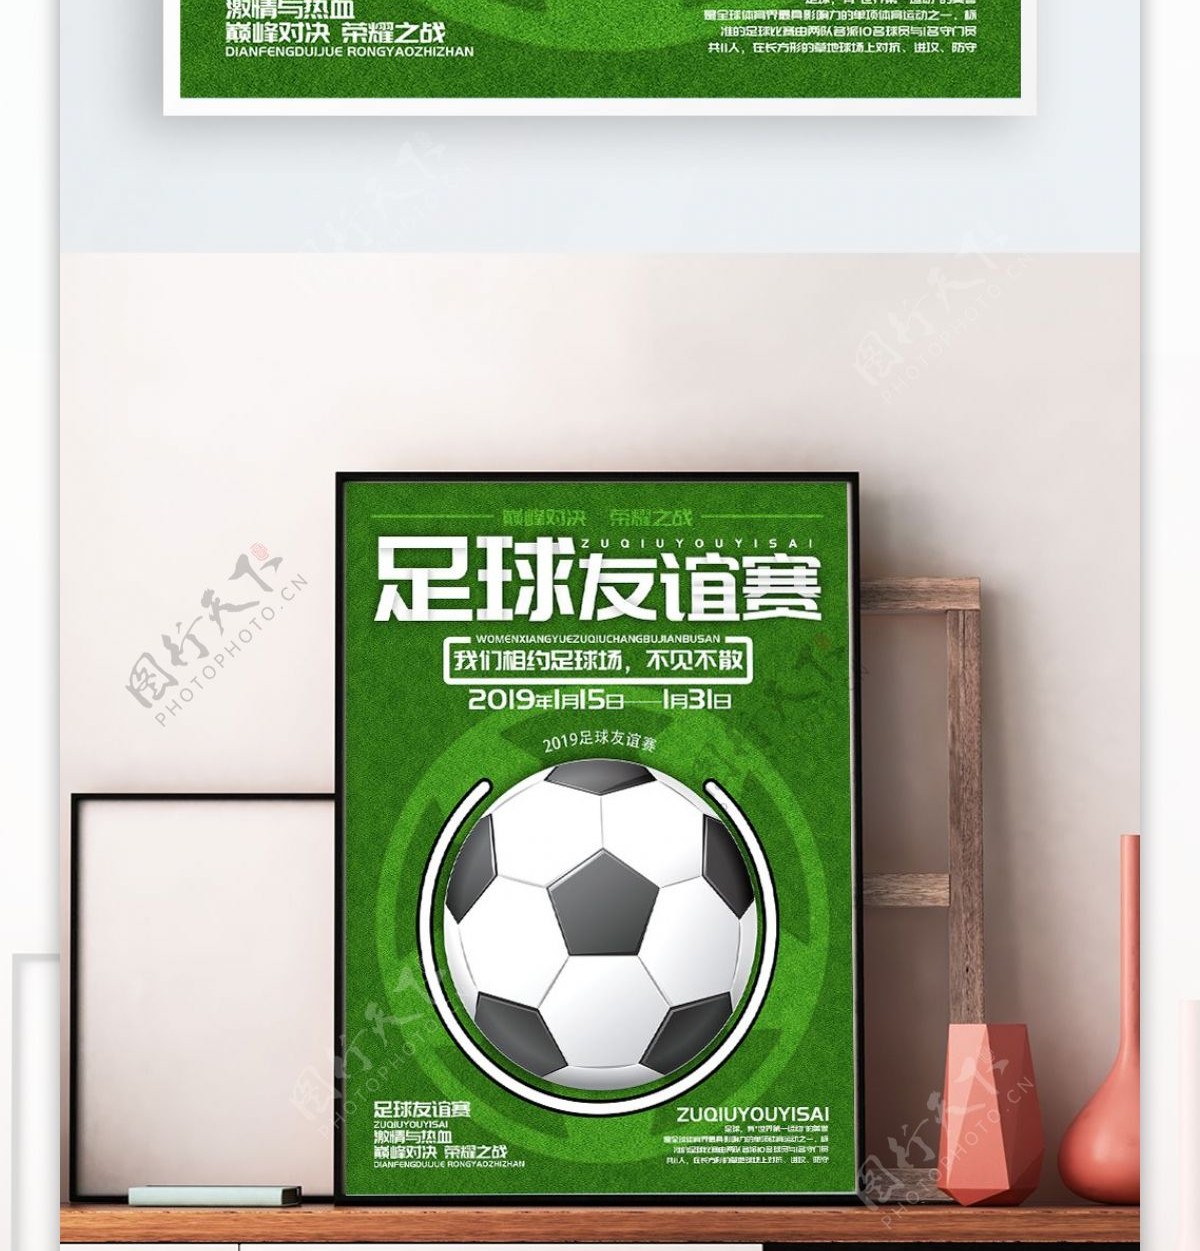 创意足球友谊赛宣传海报